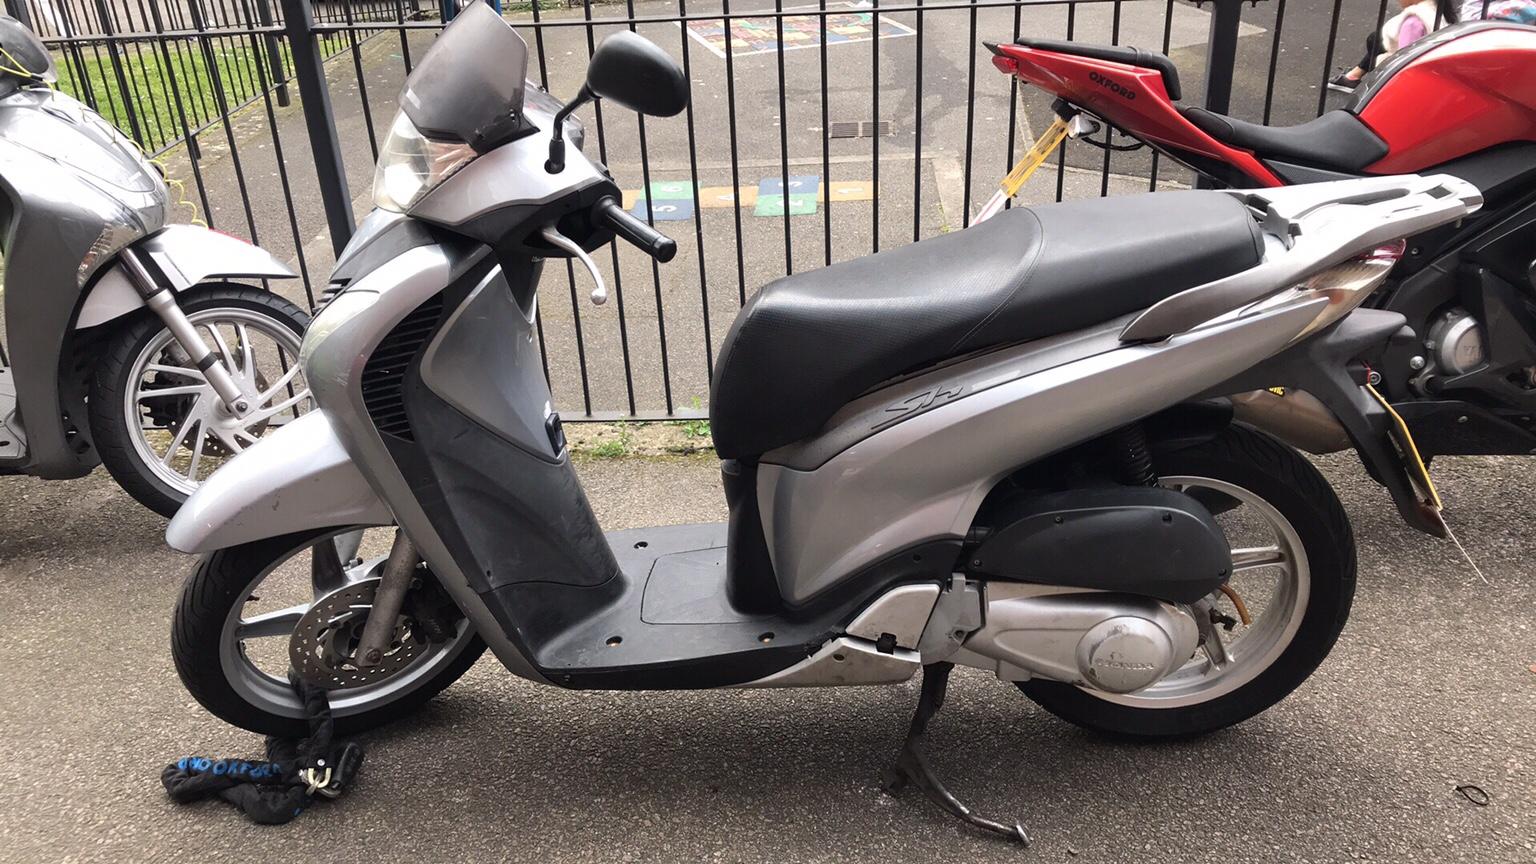 Honda Sh 125cc in E1 London for £1,000.00 for sale | Shpock